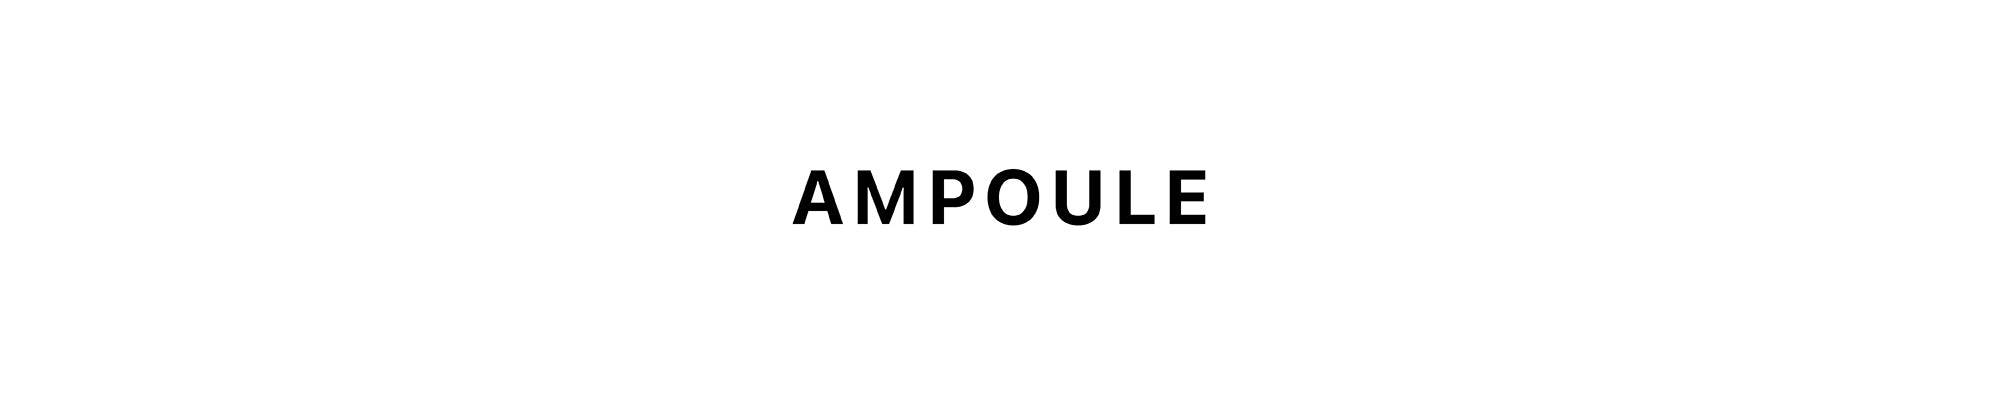 AMPOULE